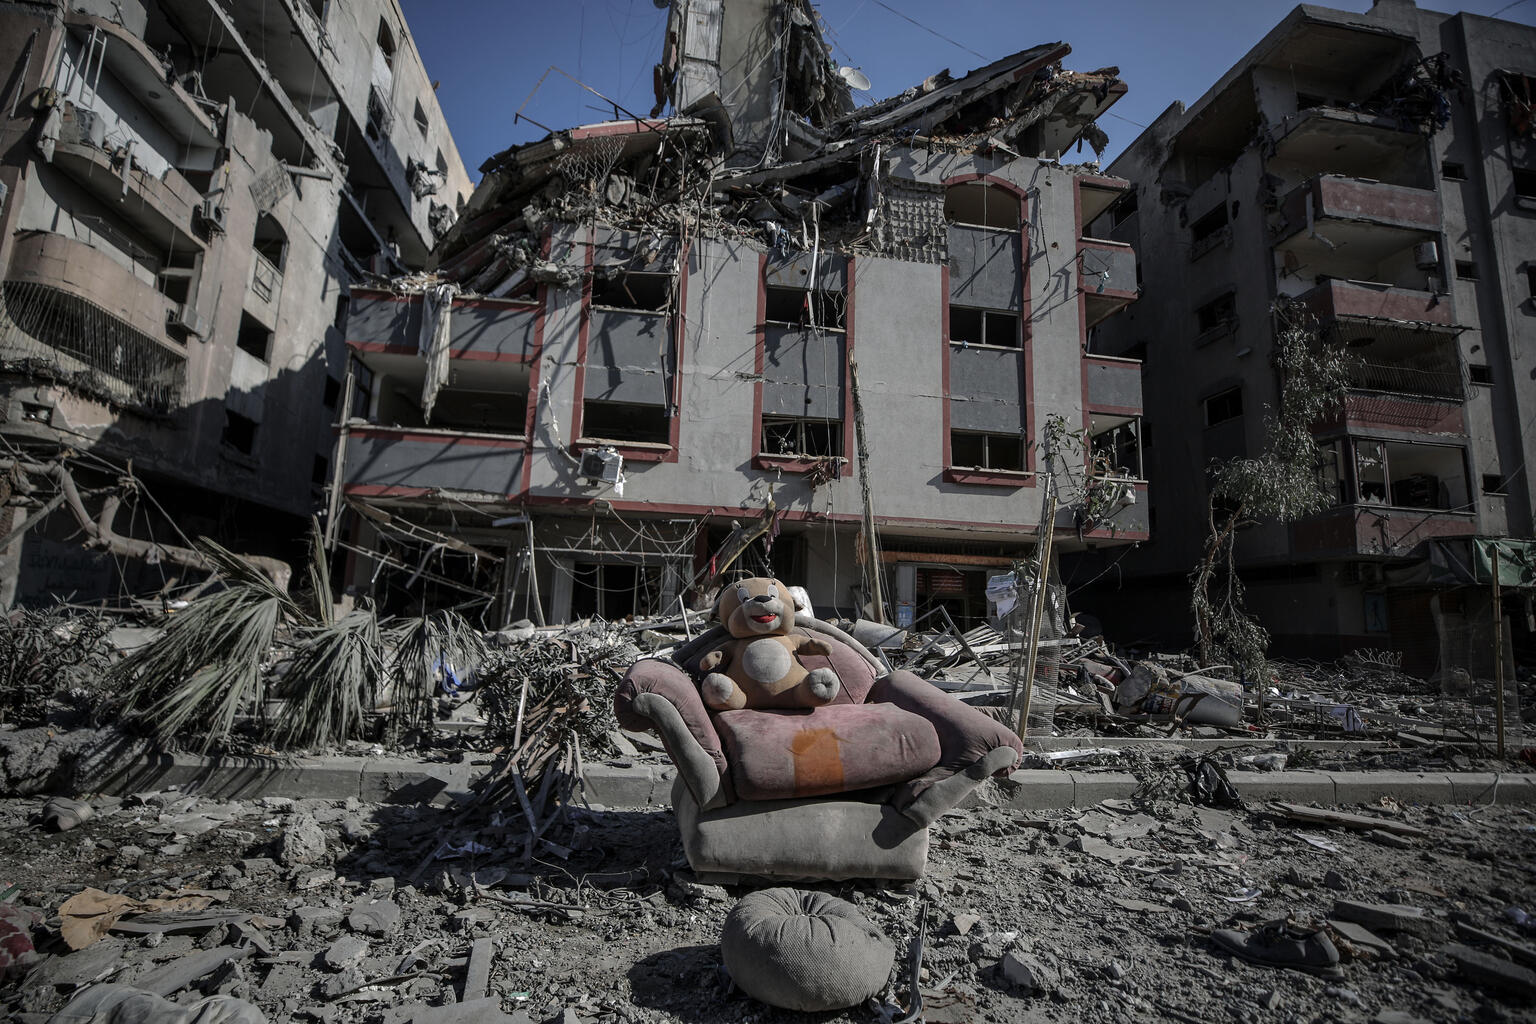 Se ve un juguete de peluche de un niño en un sofá entre escombros en una calle, con edificios dañados al fondo, tras la escalada de hostilidades en la Franja de Gaza, Estado de Palestina.